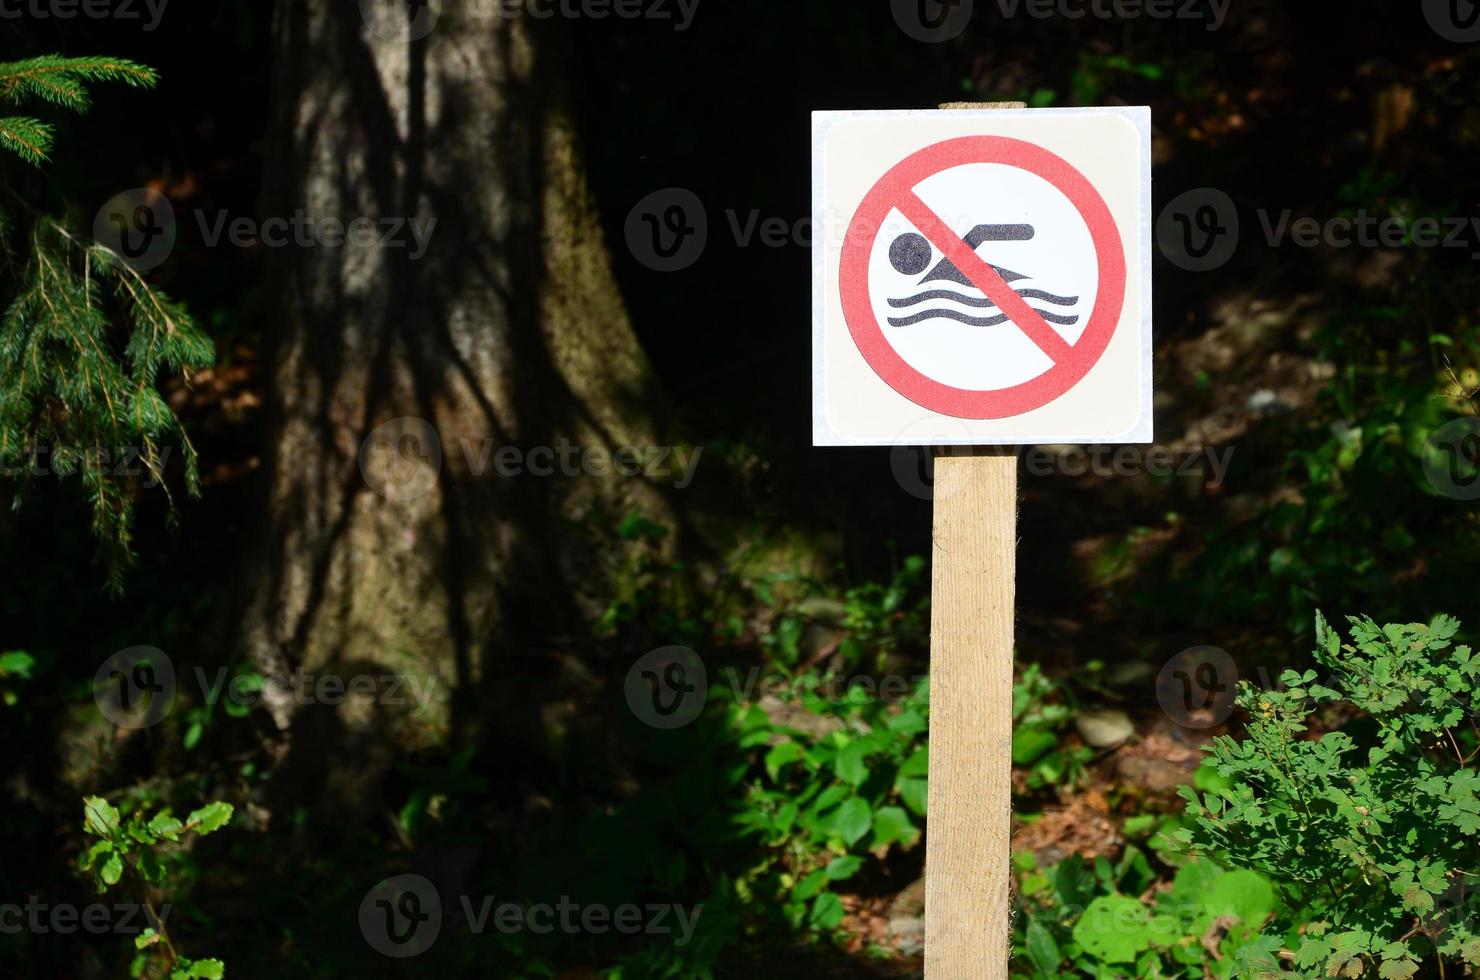 um pilar com um sinal indicando a proibição de nadar. o sinal mostra uma pessoa flutuante riscada foto